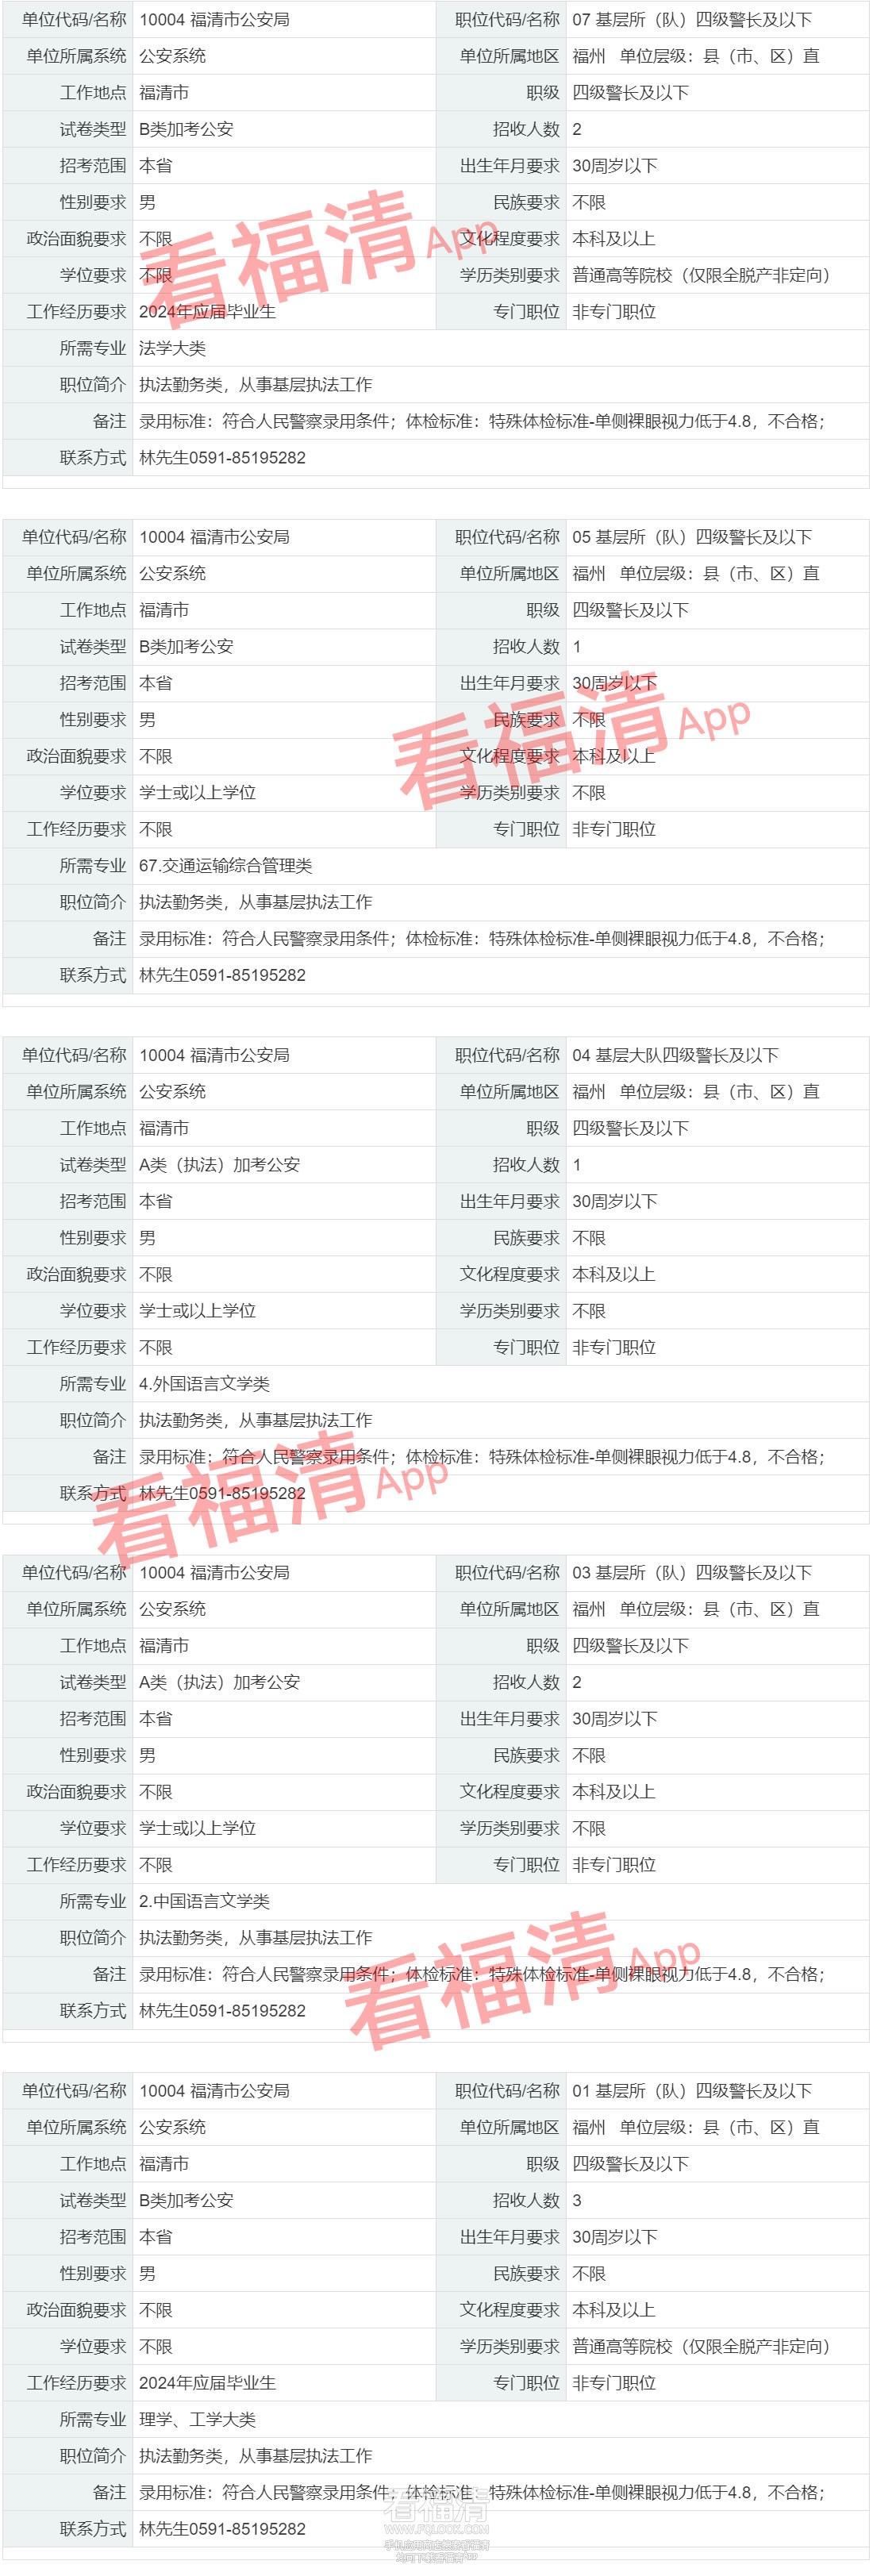 职位查询 福建省公务员考试录用网2_r1_c1.jpg